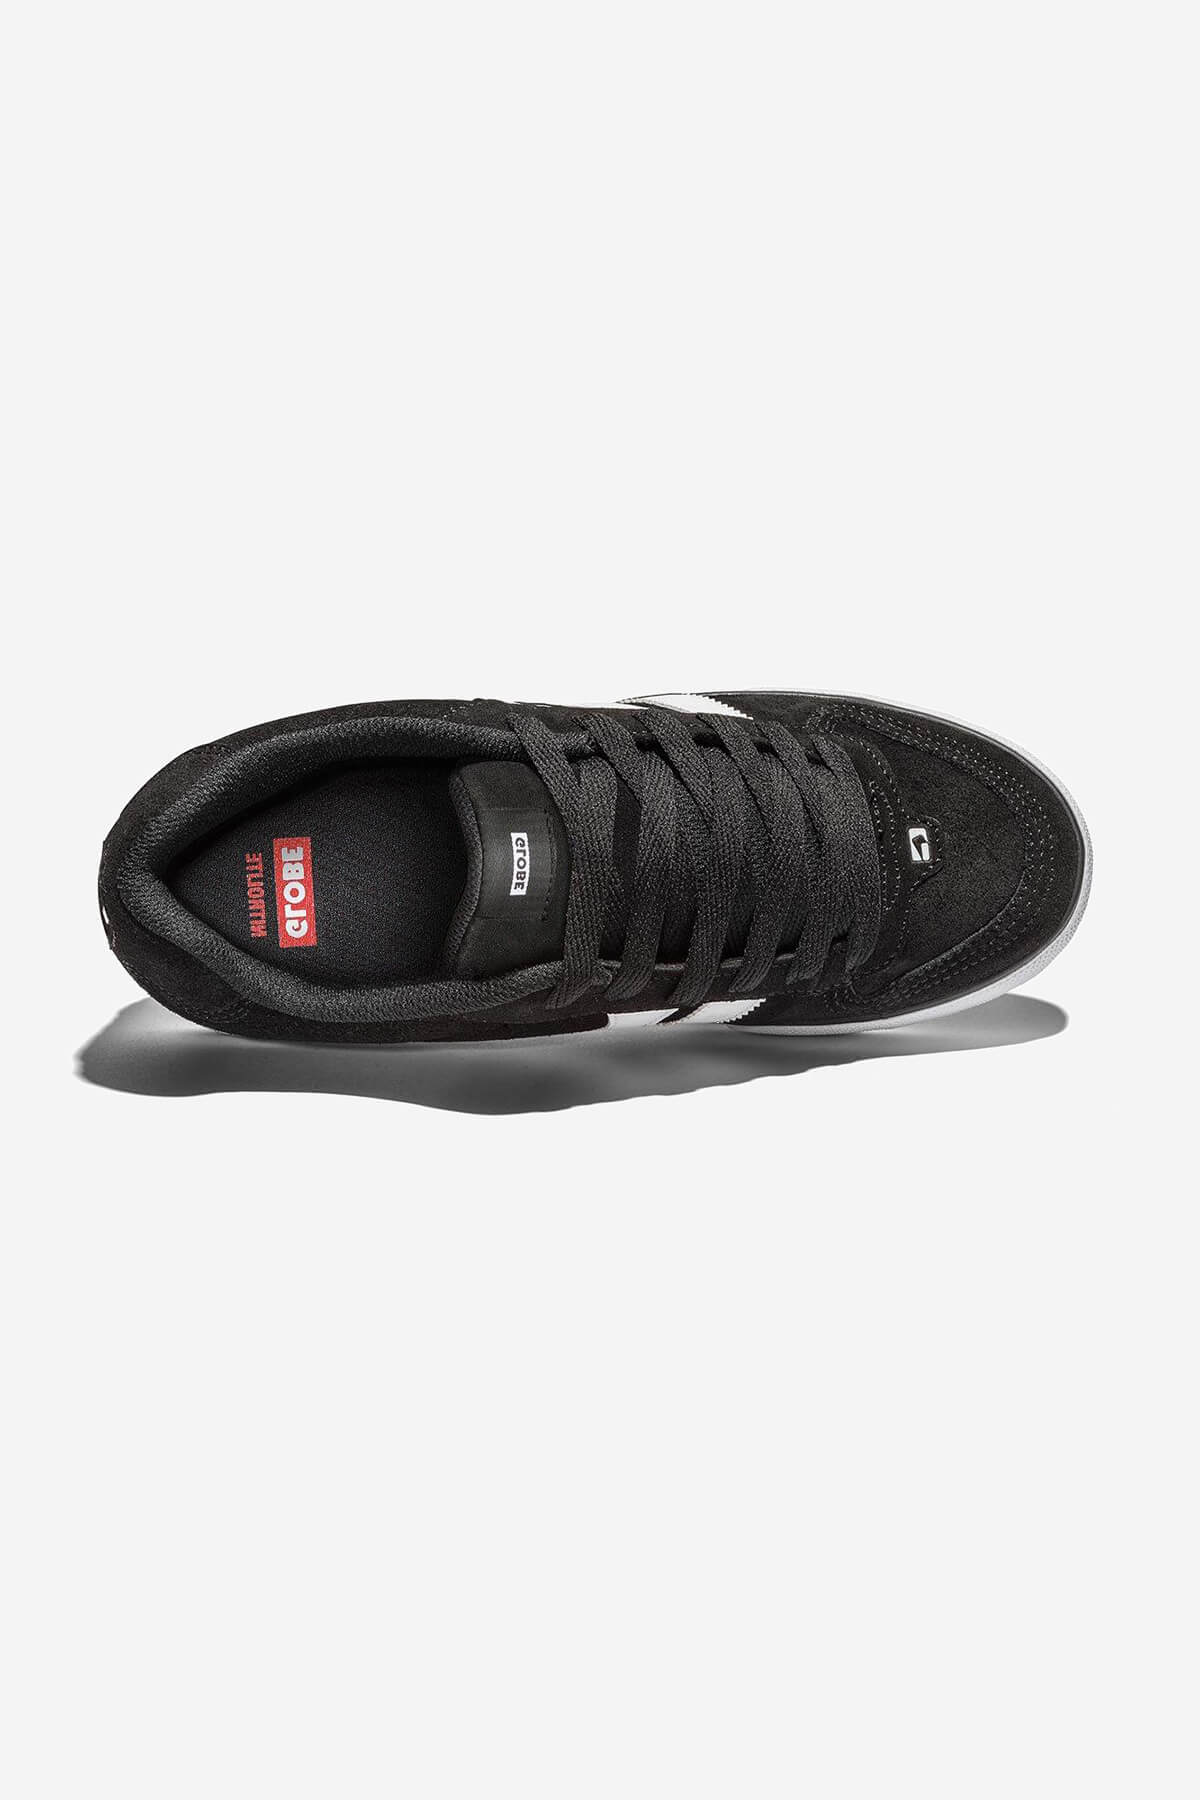 encore-2 negro white skateboard  zapatos